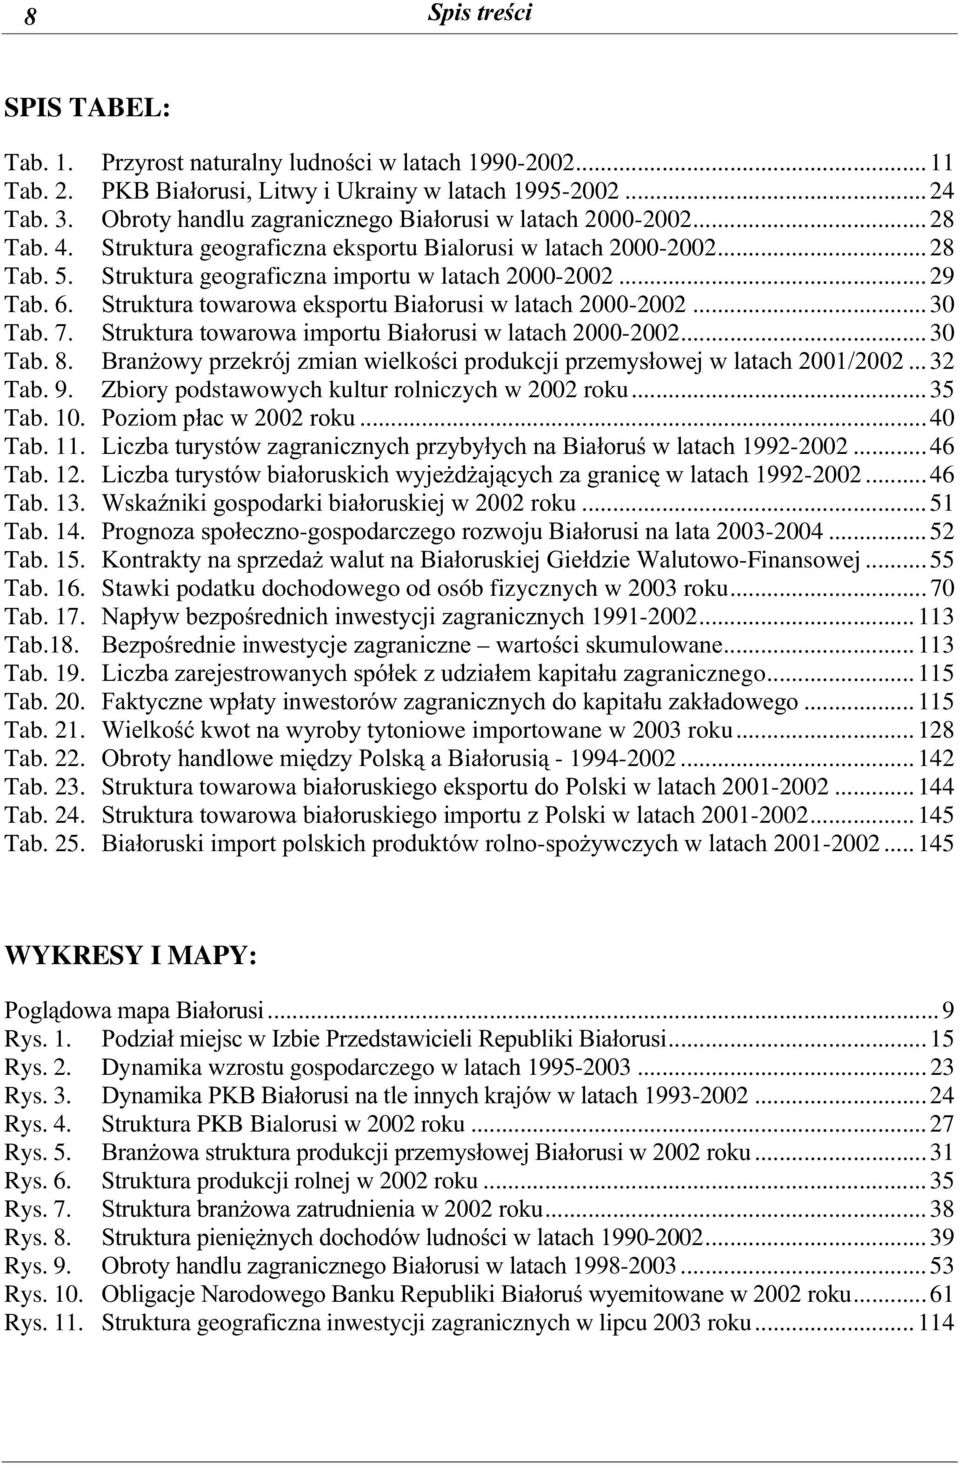 .. 29 Tab. 6. Struktura towarowa eksportu Białorusi w latach 2000-2002... 30 Tab. 7. Struktura towarowa importu Białorusi w latach 2000-2002... 30 Tab. 8.